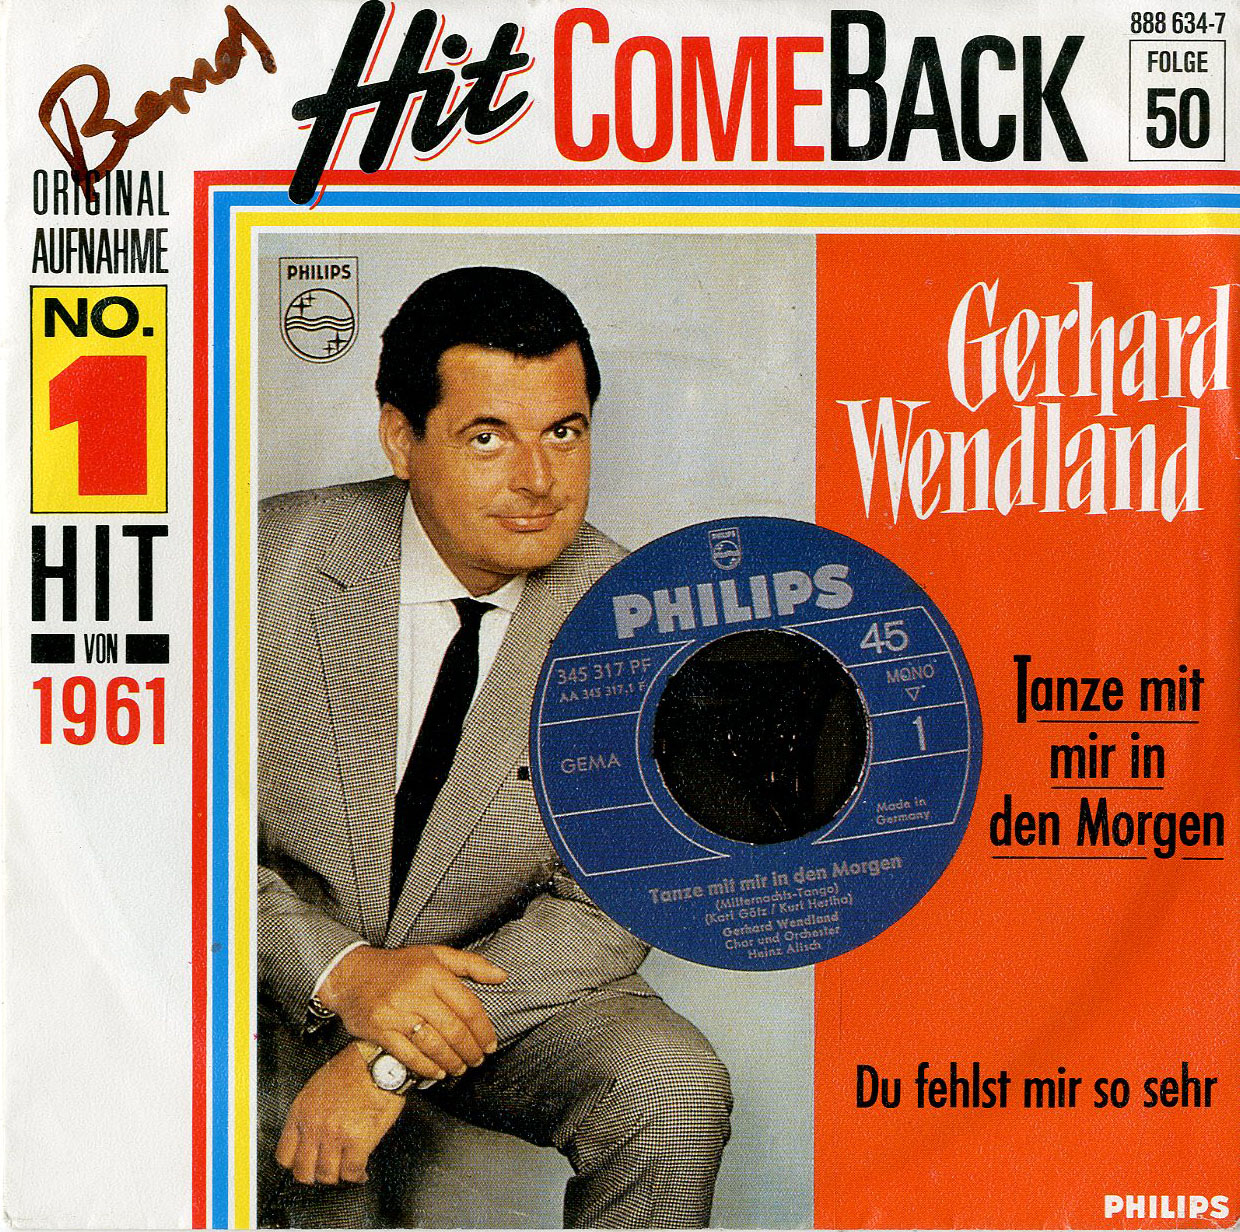 Albumcover Gerhard Wendland - Tanze mit mir in den Morgen / Du fehlst mir so sehr (Hit Comeback Folge 50)